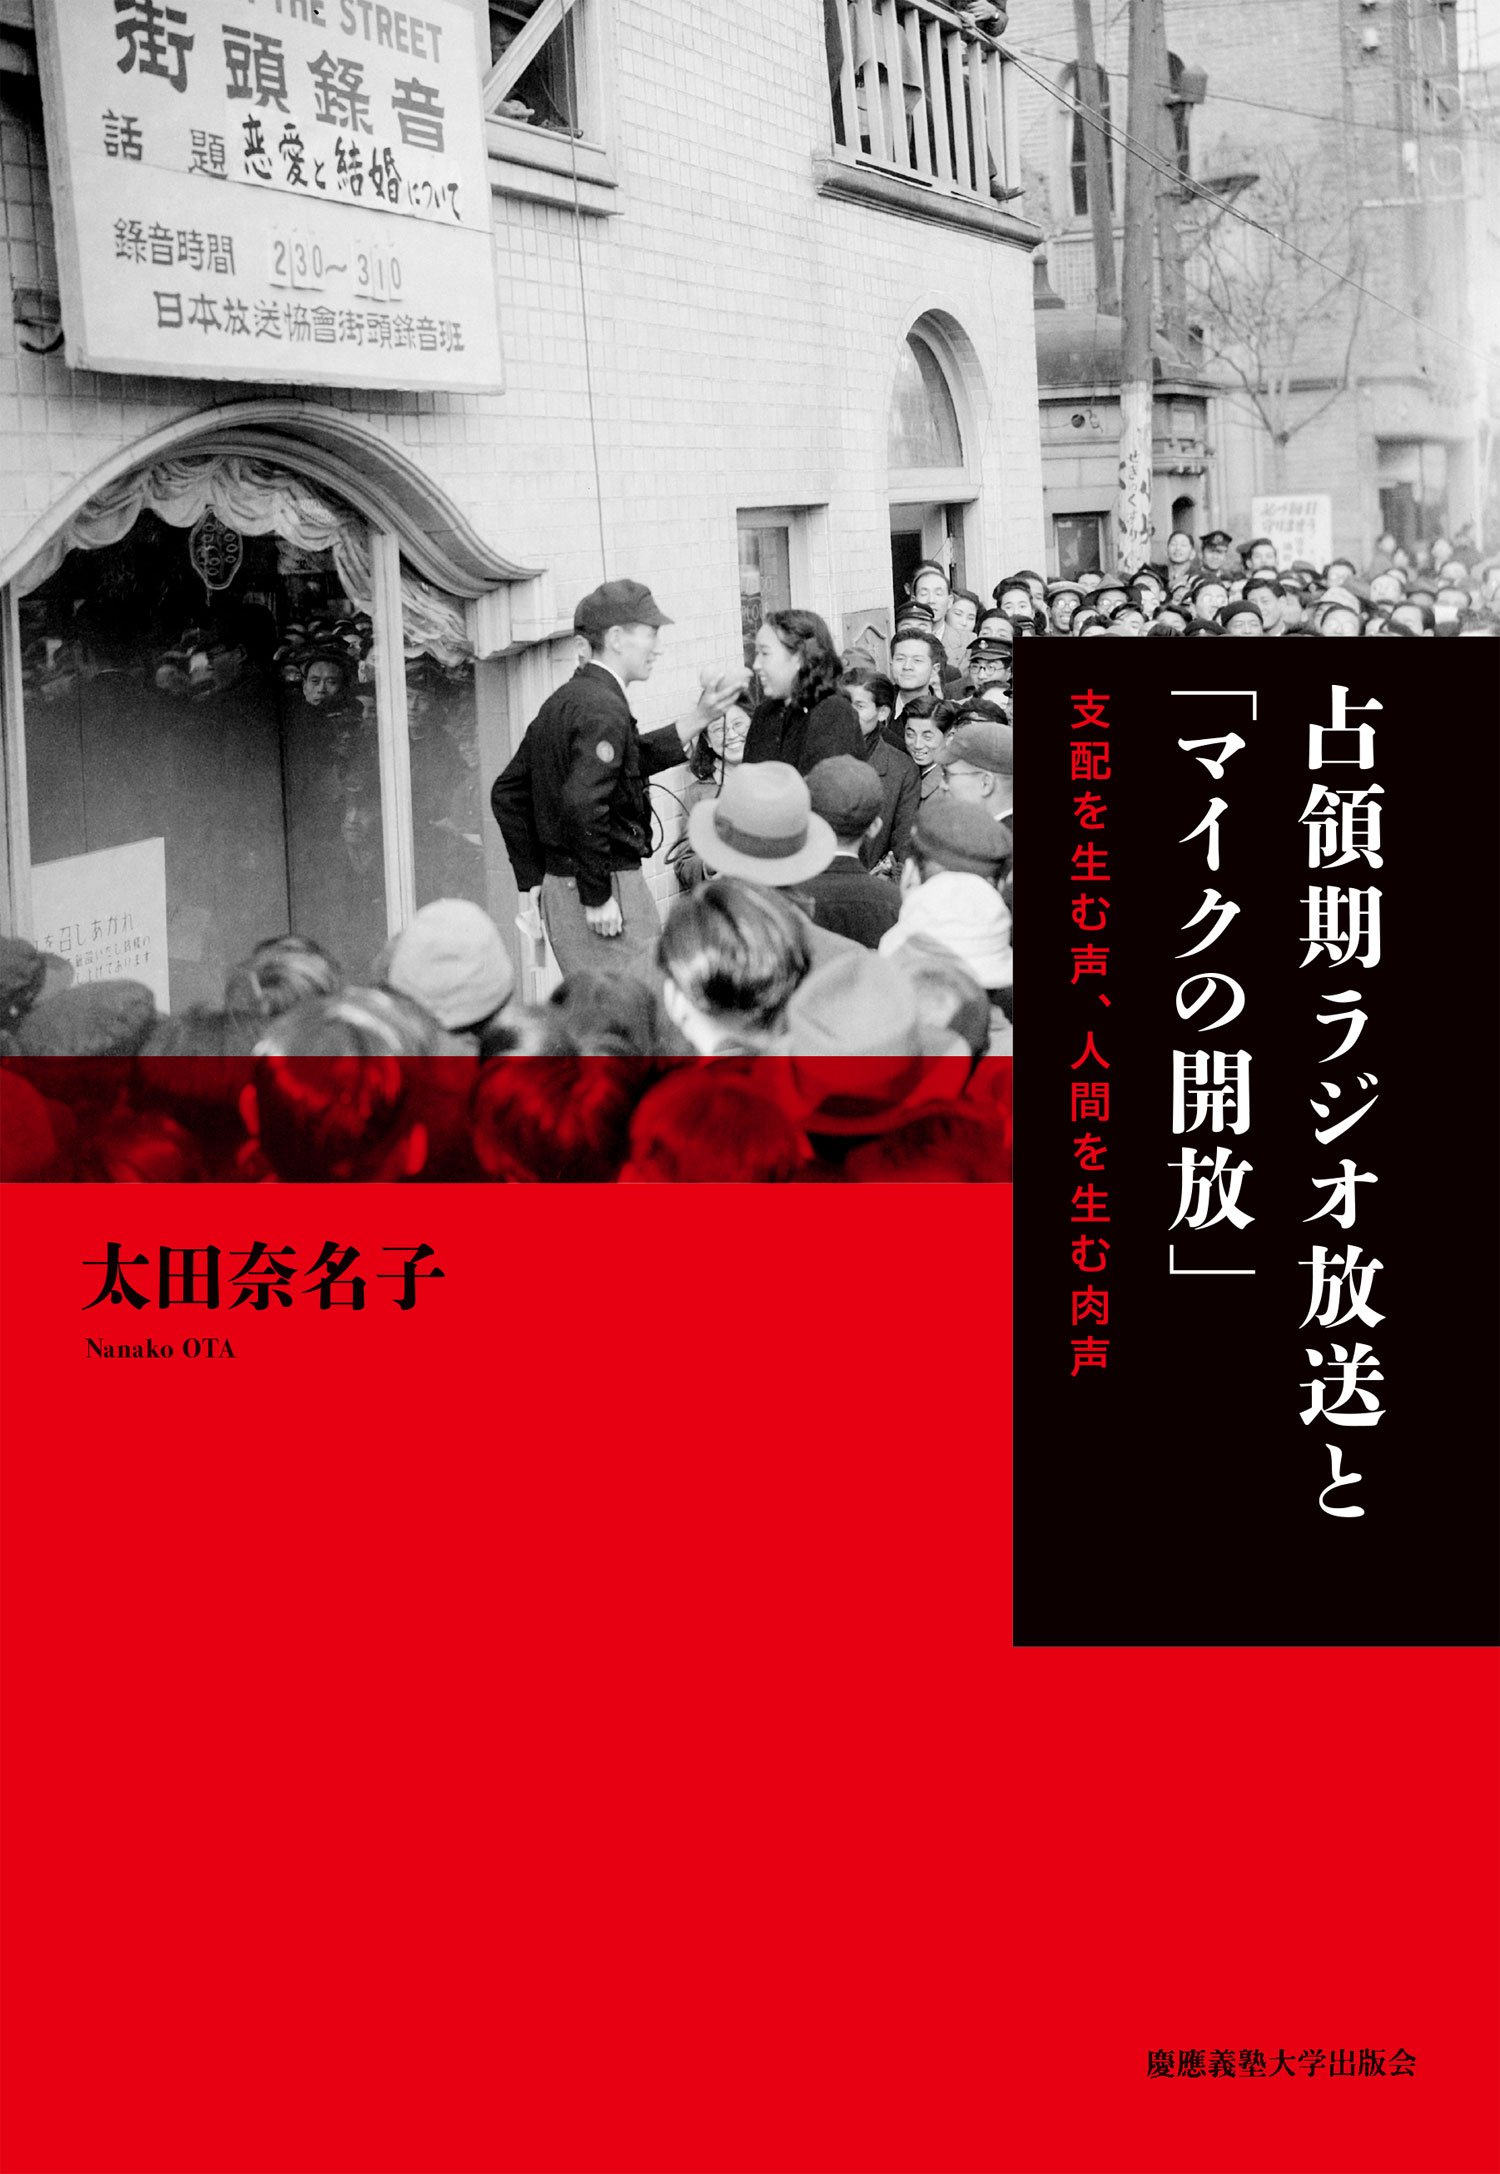 日本占領期のラジオインタビューのモノクロ写真